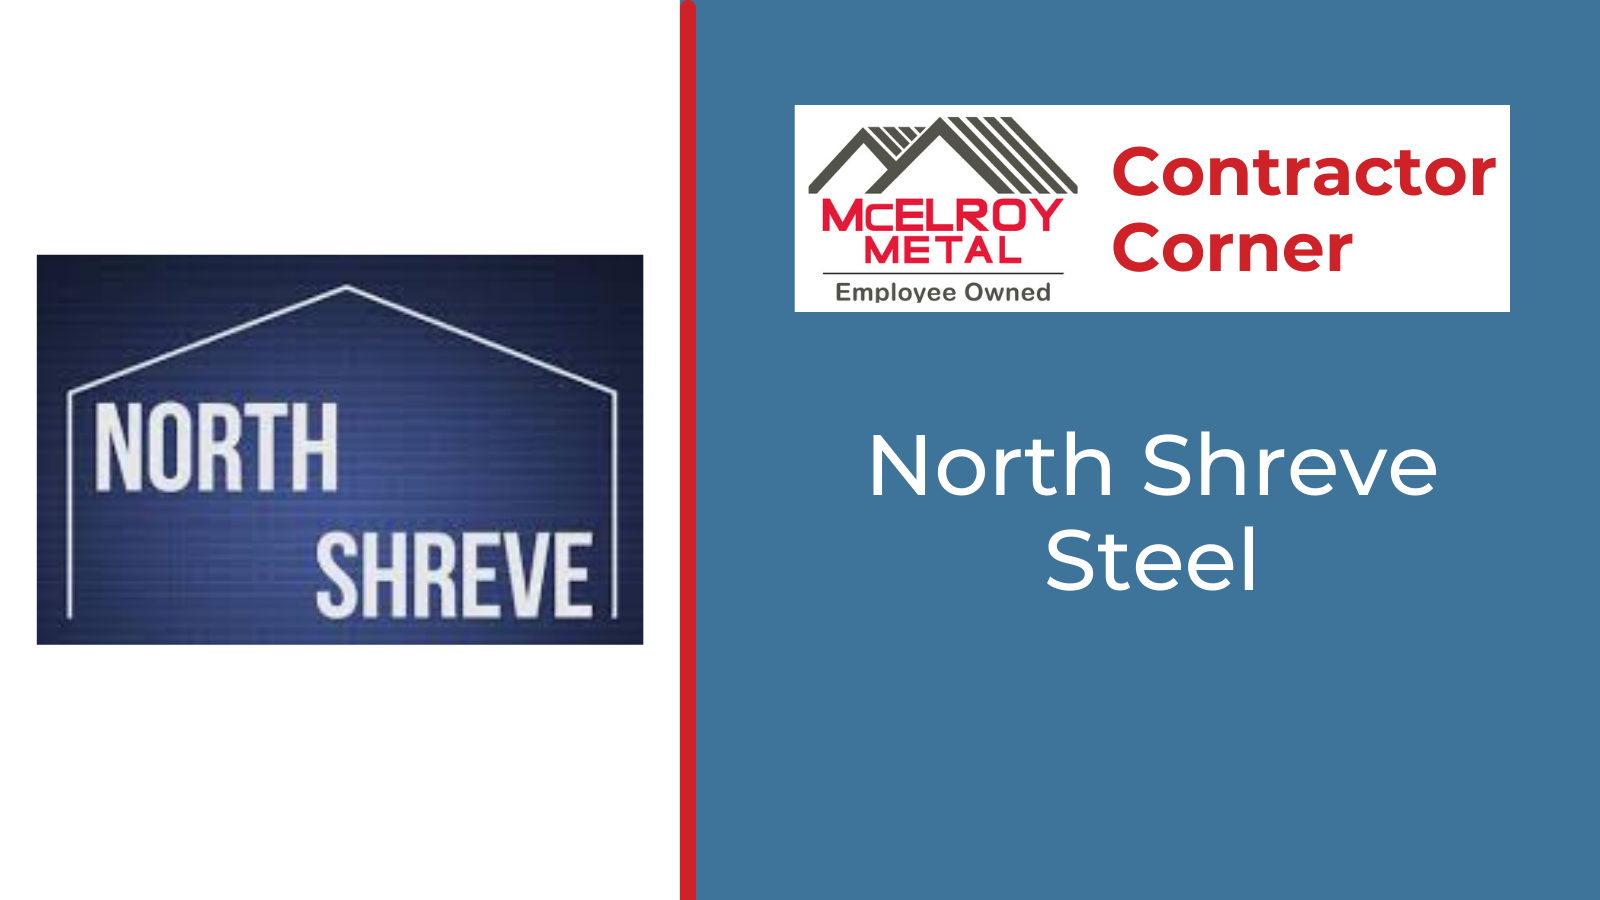 Contractor Corner - North Shreve Steel